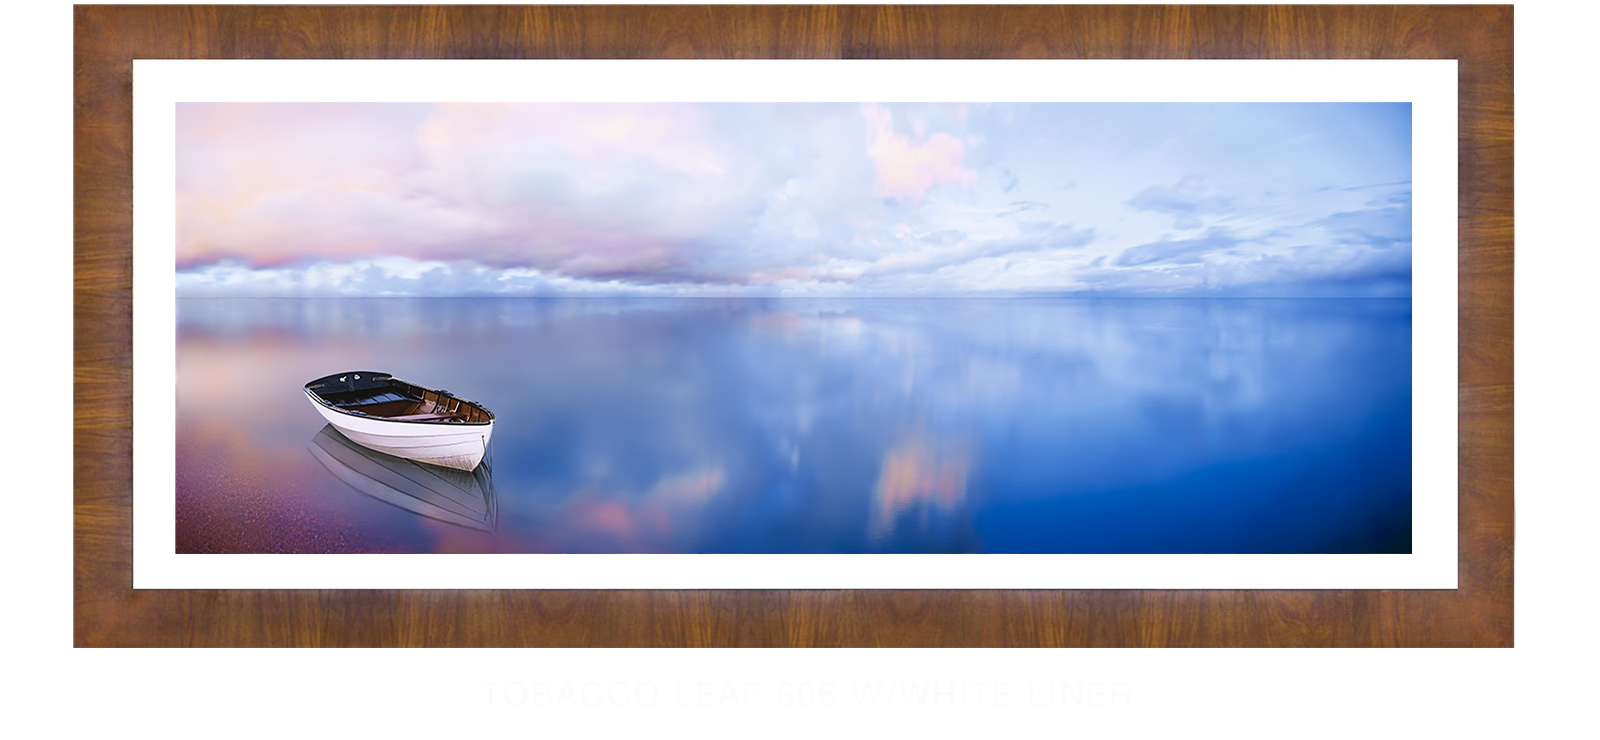 24BLUELAKEBOAT Tobacco Leaf 606 w_Wht Liner T